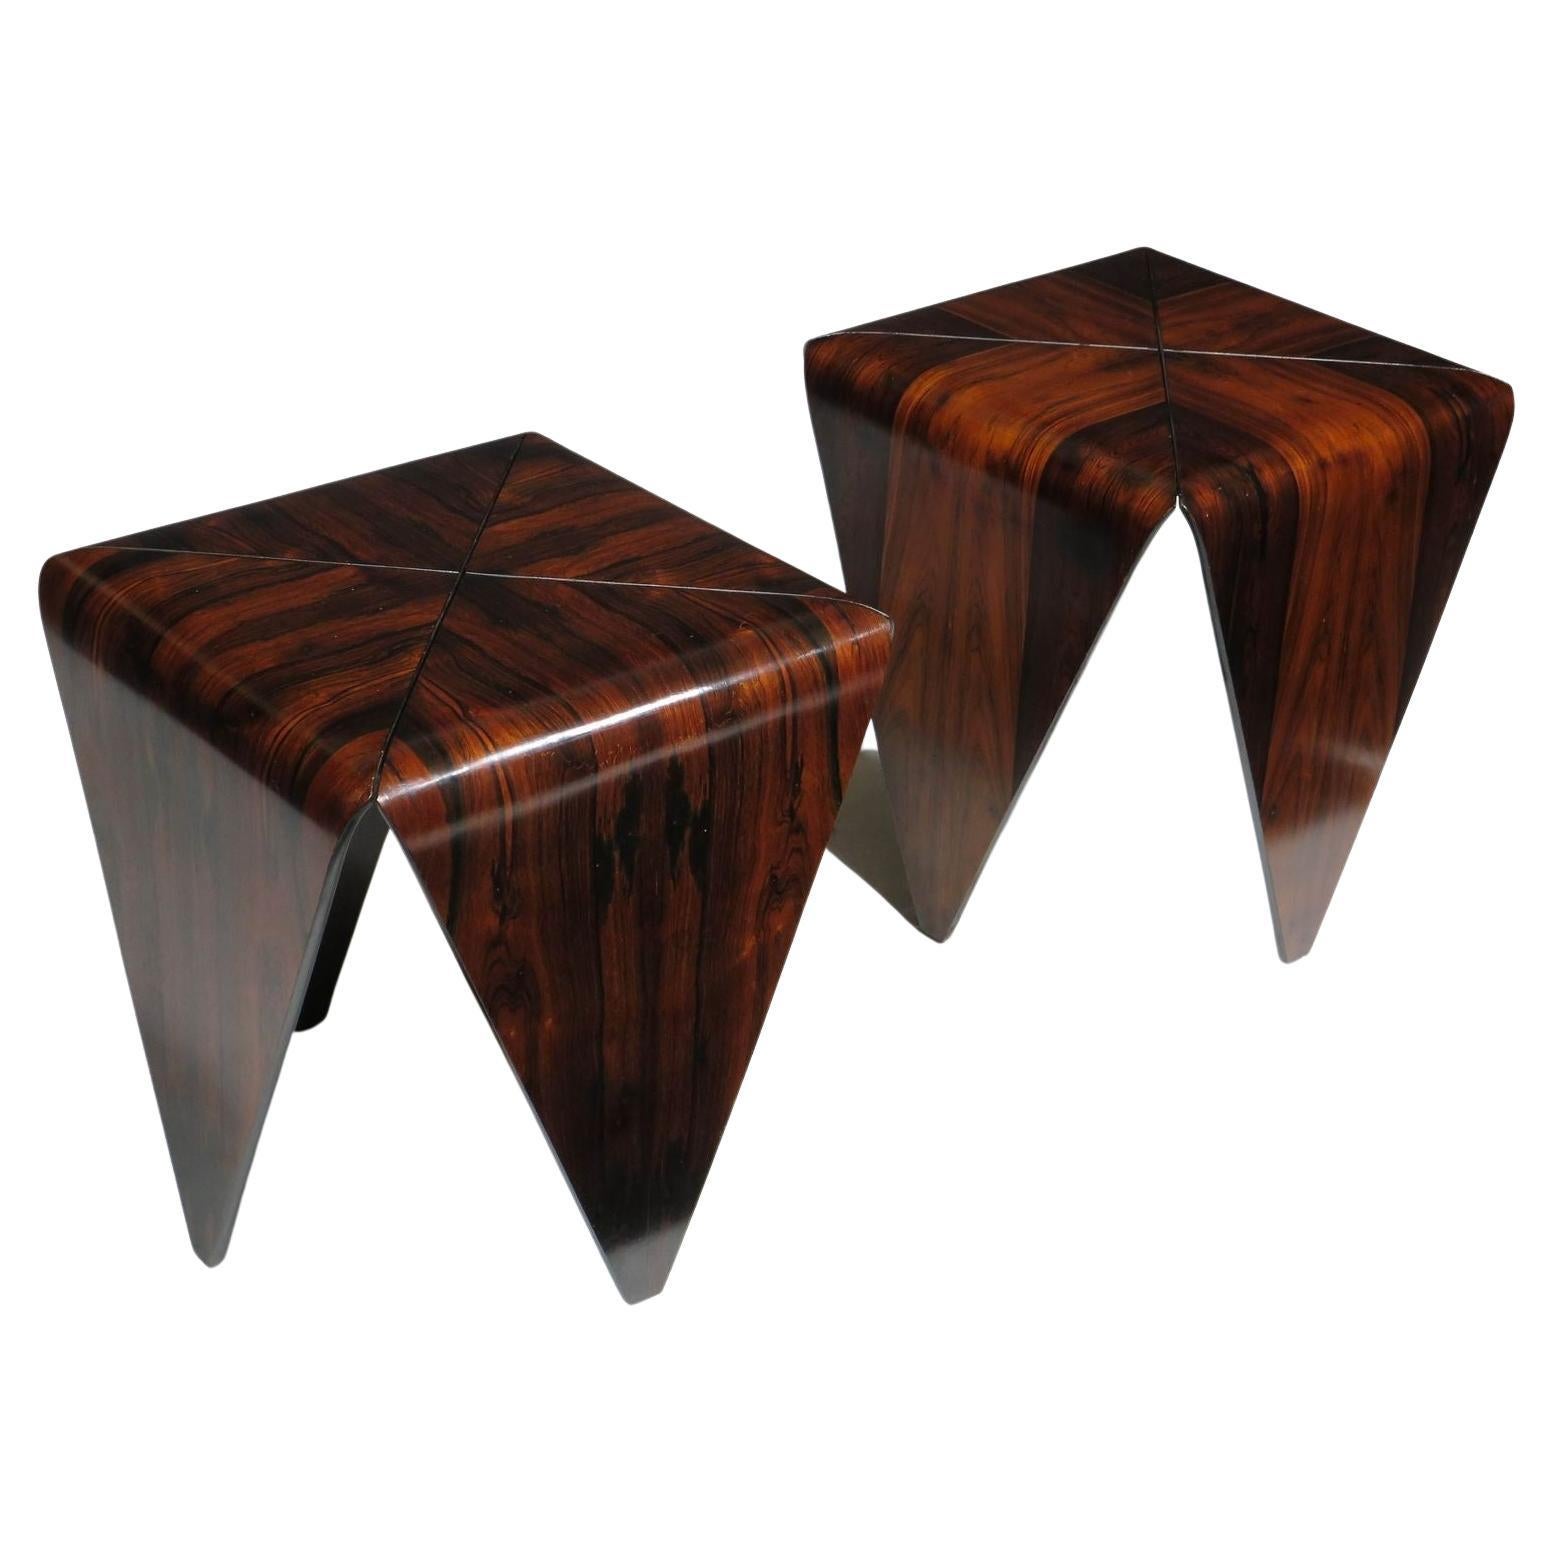 Paire de tables d'appoint en palissandre du milieu du siècle dernier, conçues par Jorge Zalszupin et fabriquées par L' Atelier, Sao Paulo, Brésil. Les tables sont fabriquées de manière unique en bois de rose étuvé, en forme d'origami de quatre